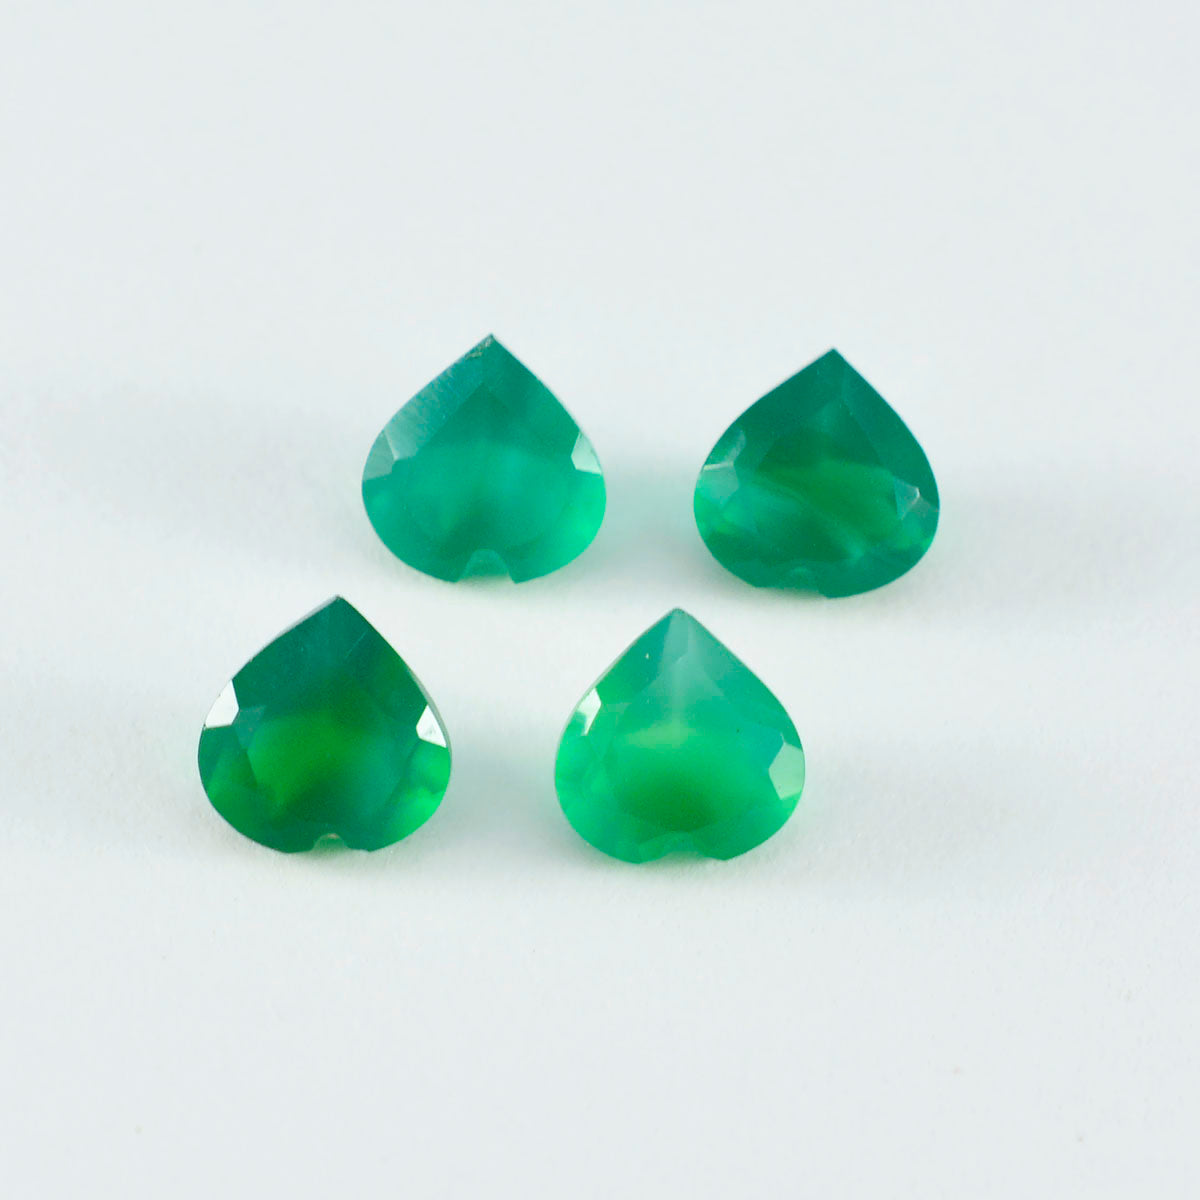 Riyogems 1PC natuurlijke groene onyx gefacetteerd 6X6 mm hartvorm mooie kwaliteitsedelsteen